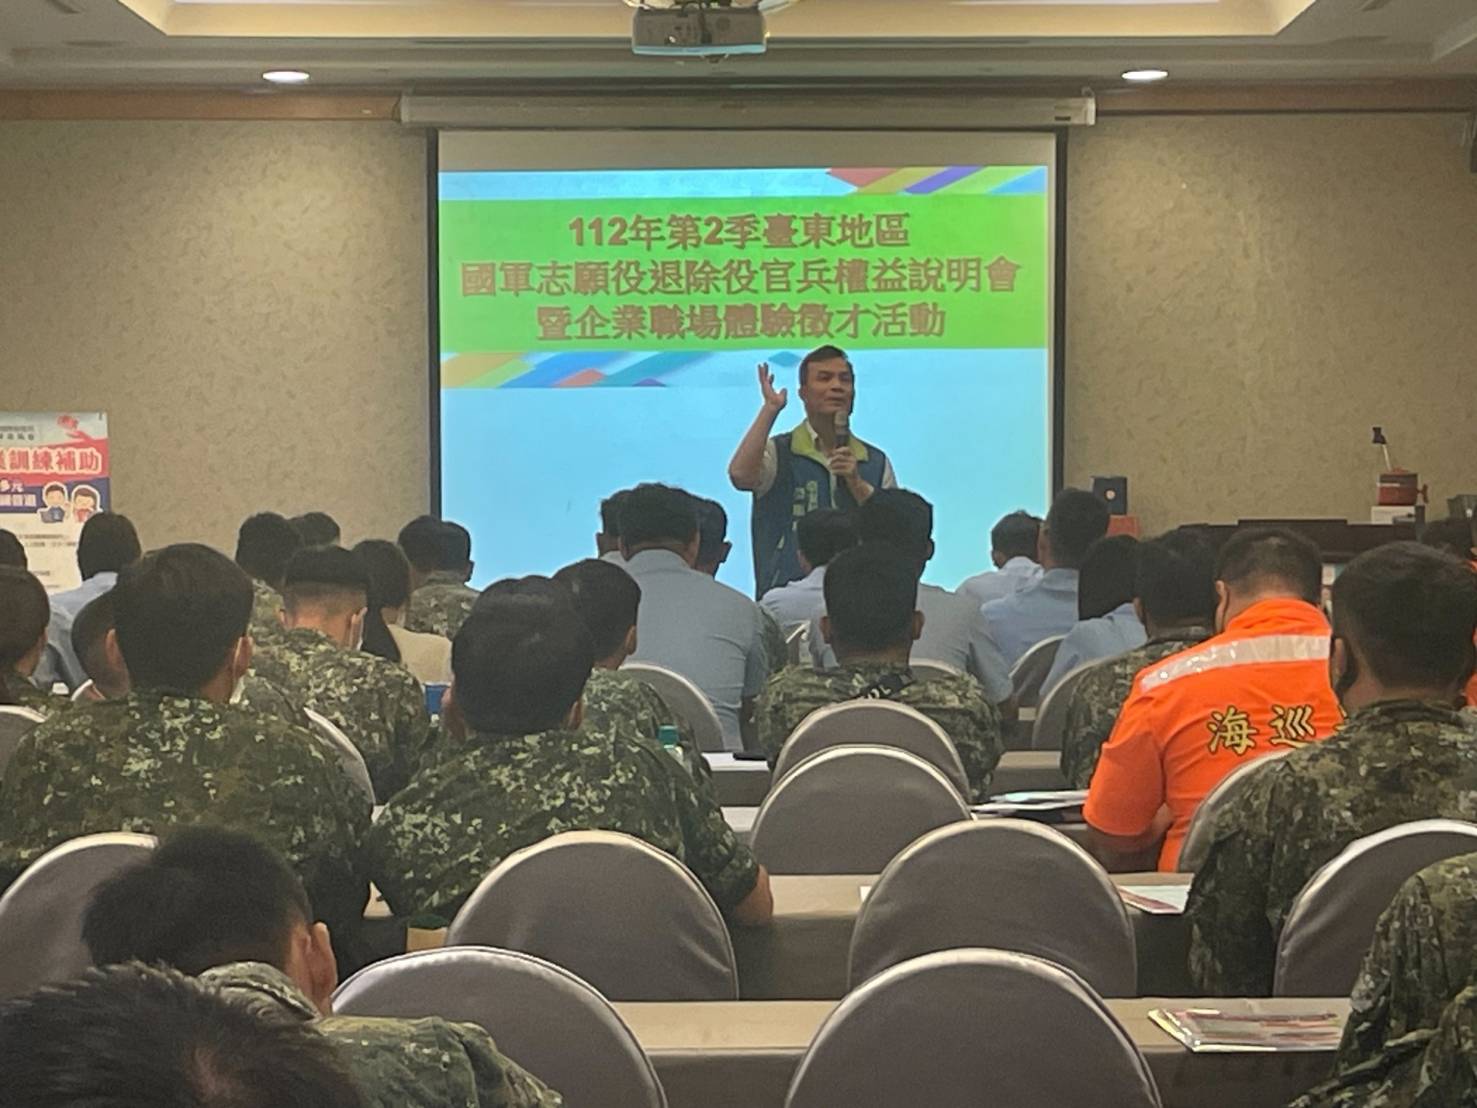 臺東地區第2季屆退官兵權益說明會 榮服處提供就學就業職訓服務